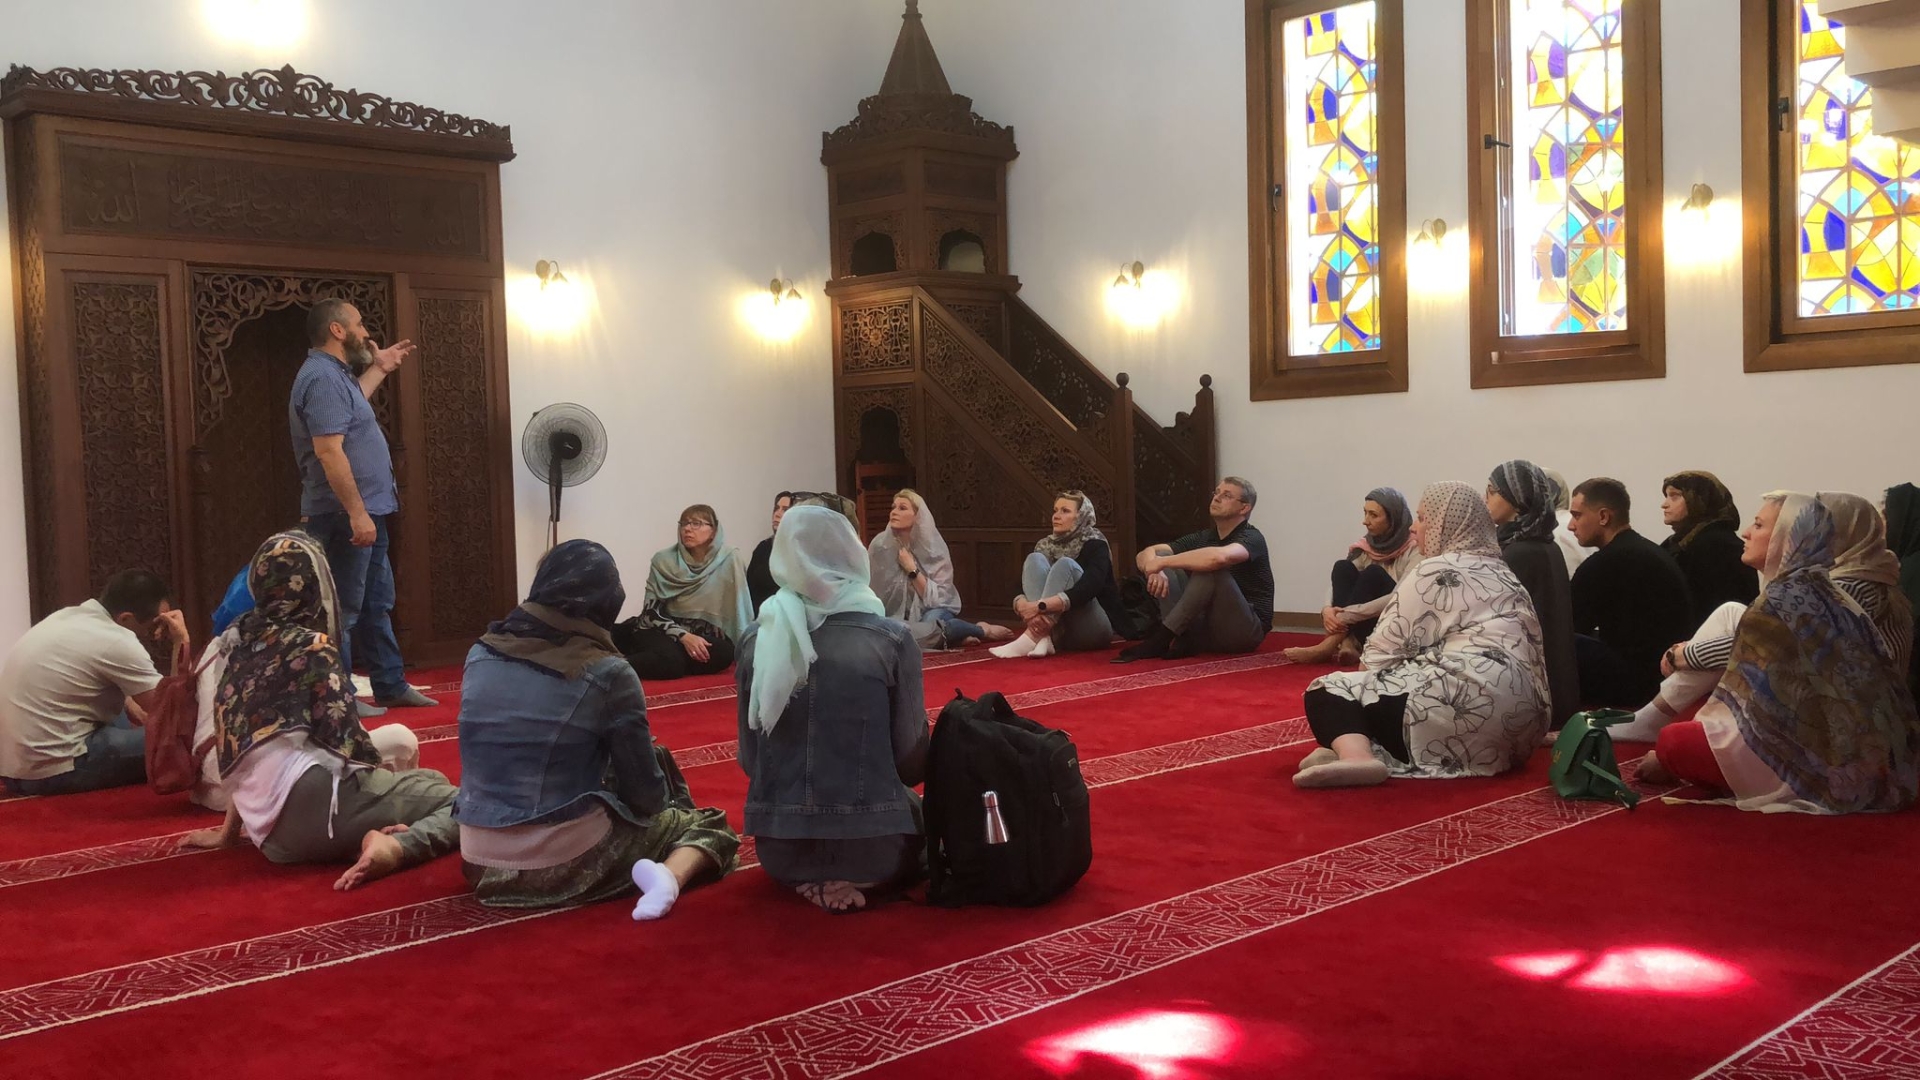 Muftijus A. Beganskas pristatė islamo religiją ir kultūrą Kauno apygardos prokuratūrai